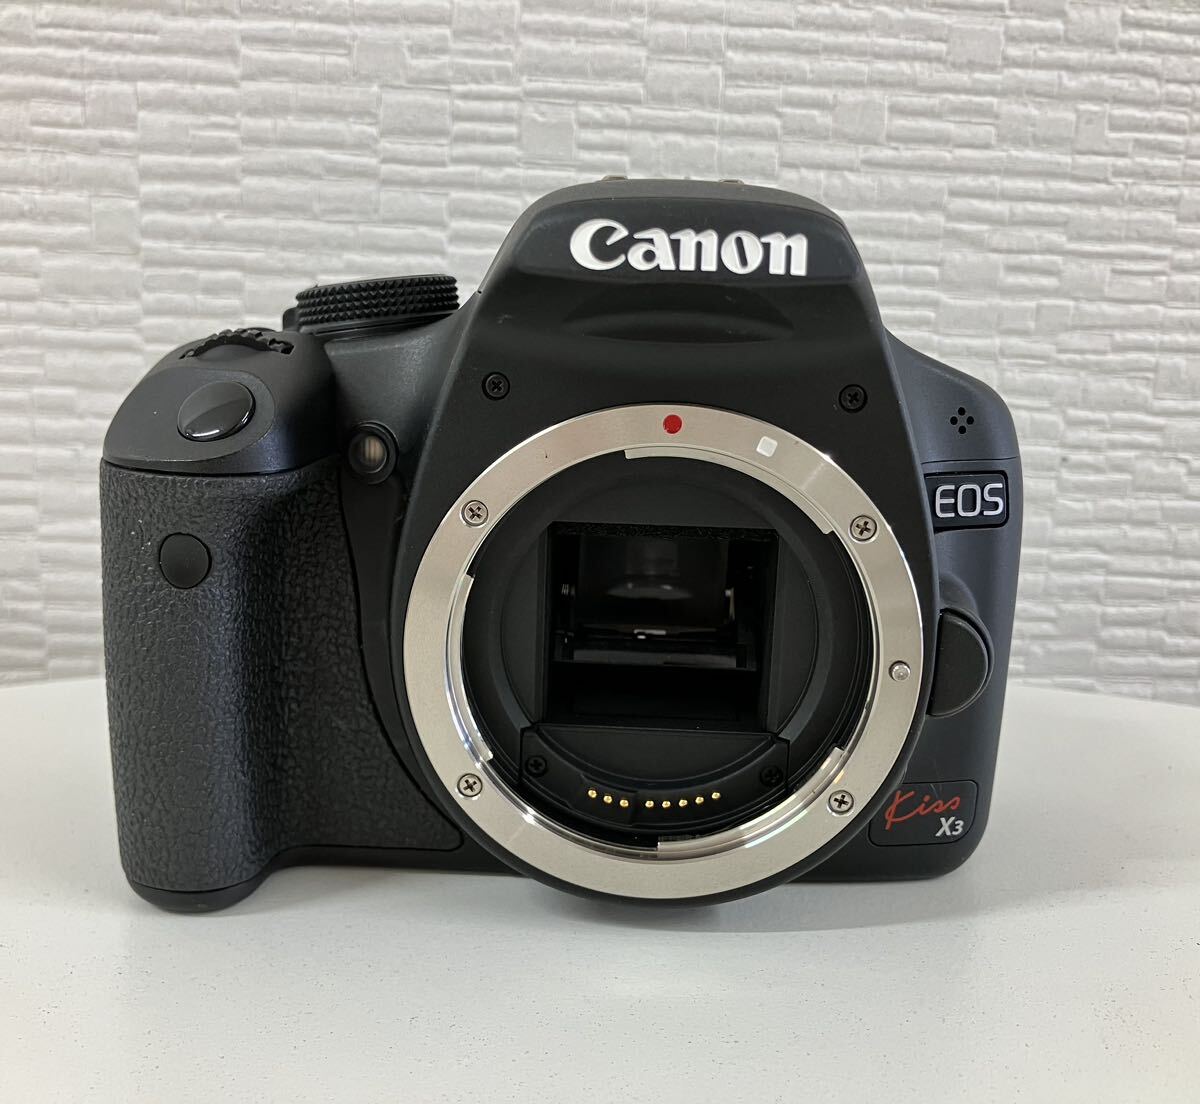 Canon キャノン EOS Kiss X3 デジタル一眼レフカメラ CANON ZOOM LENS EF-S 18-55mm 1:3.5-5.6 IS レンズ プロテクター付 動作未確認